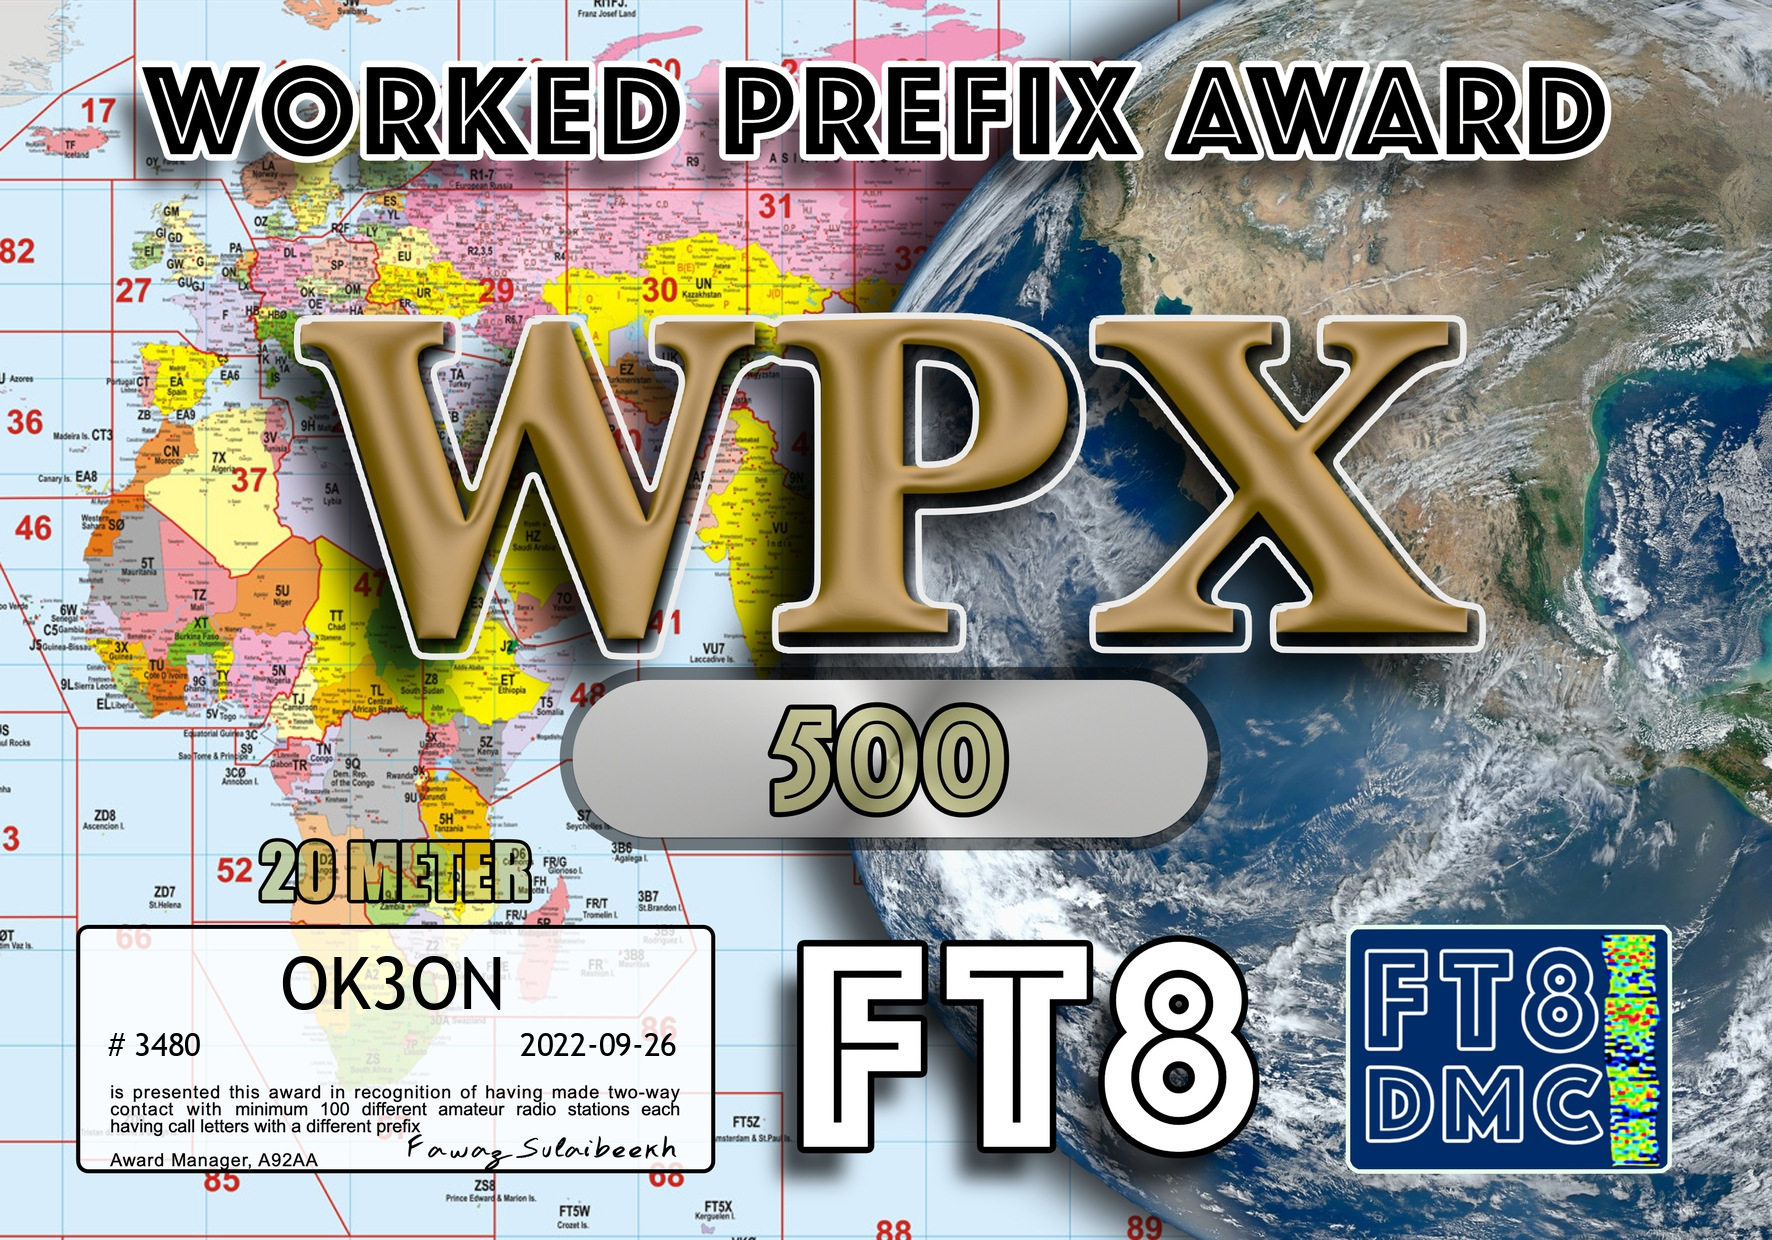 awards/OK3ON-WPX20-500_FT8DMC.jpg